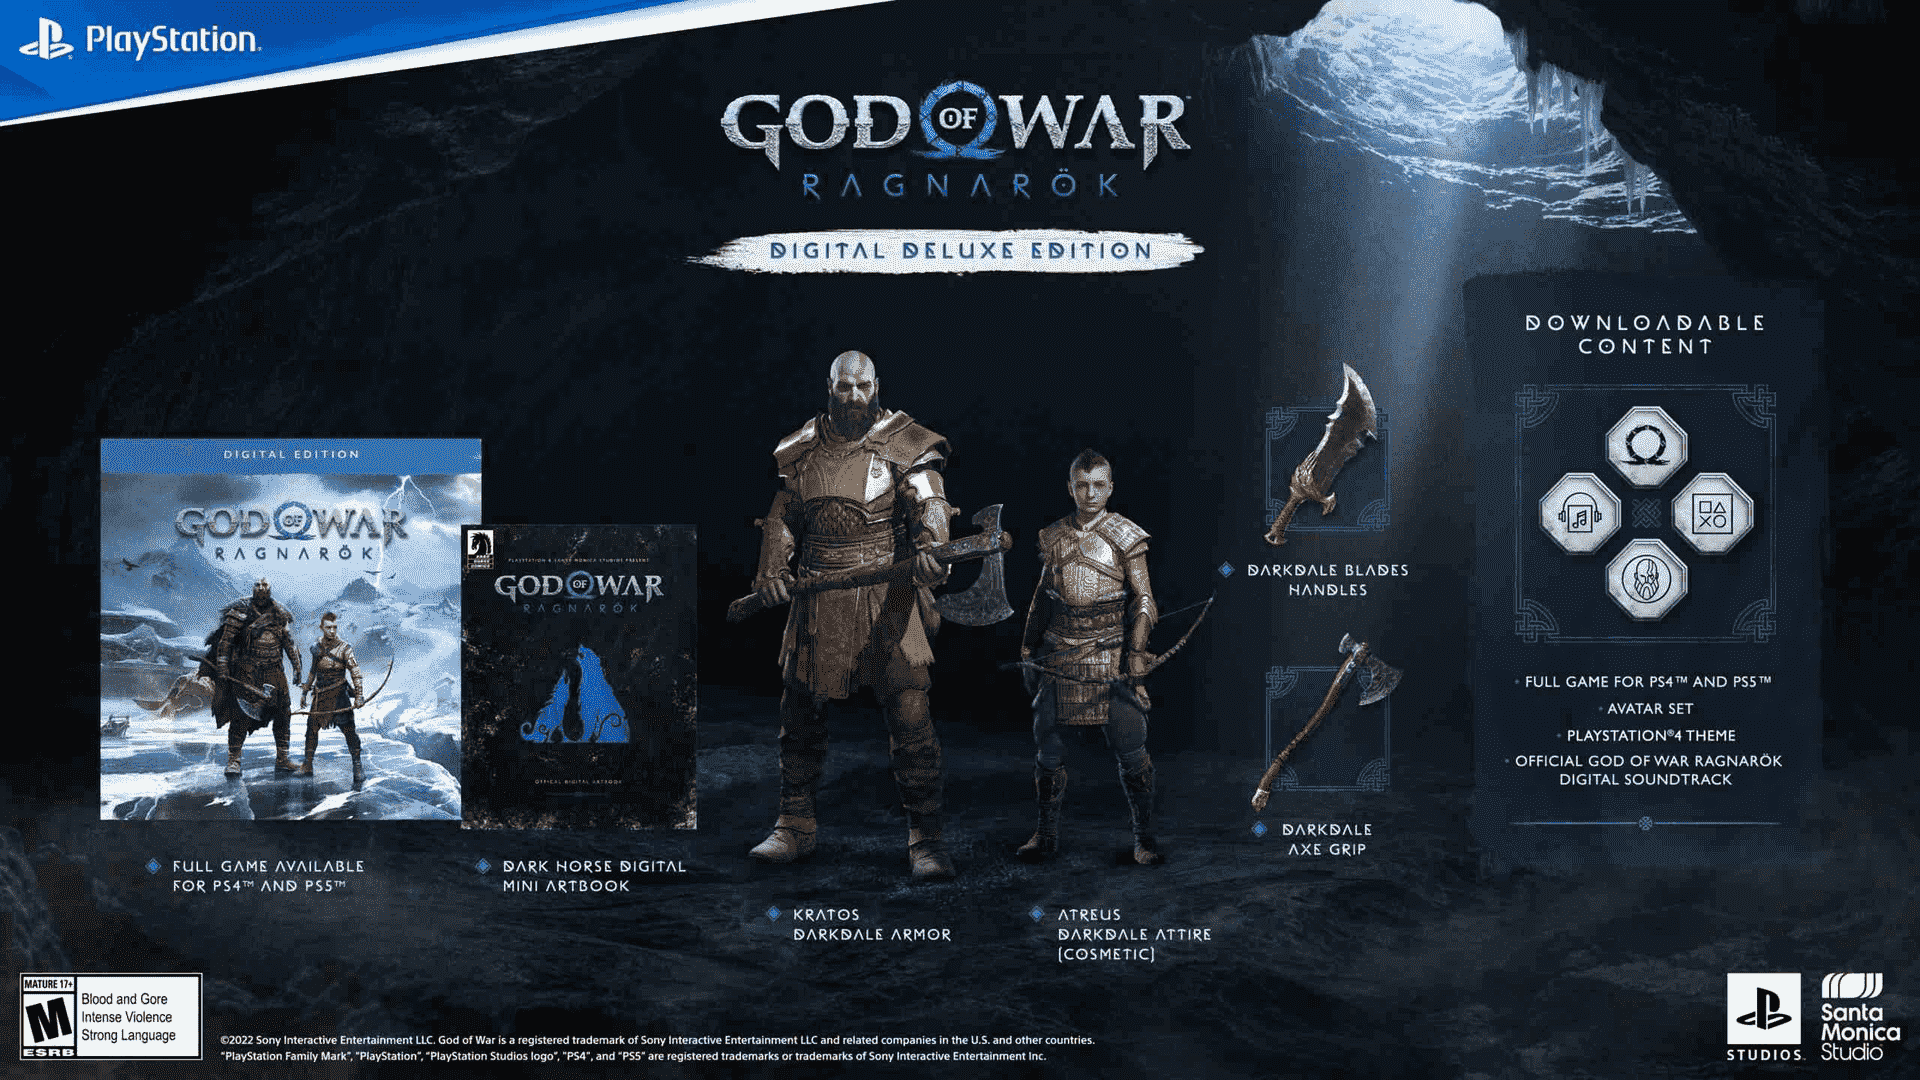 God of War Ragnarok – Digital Deluxe Edition